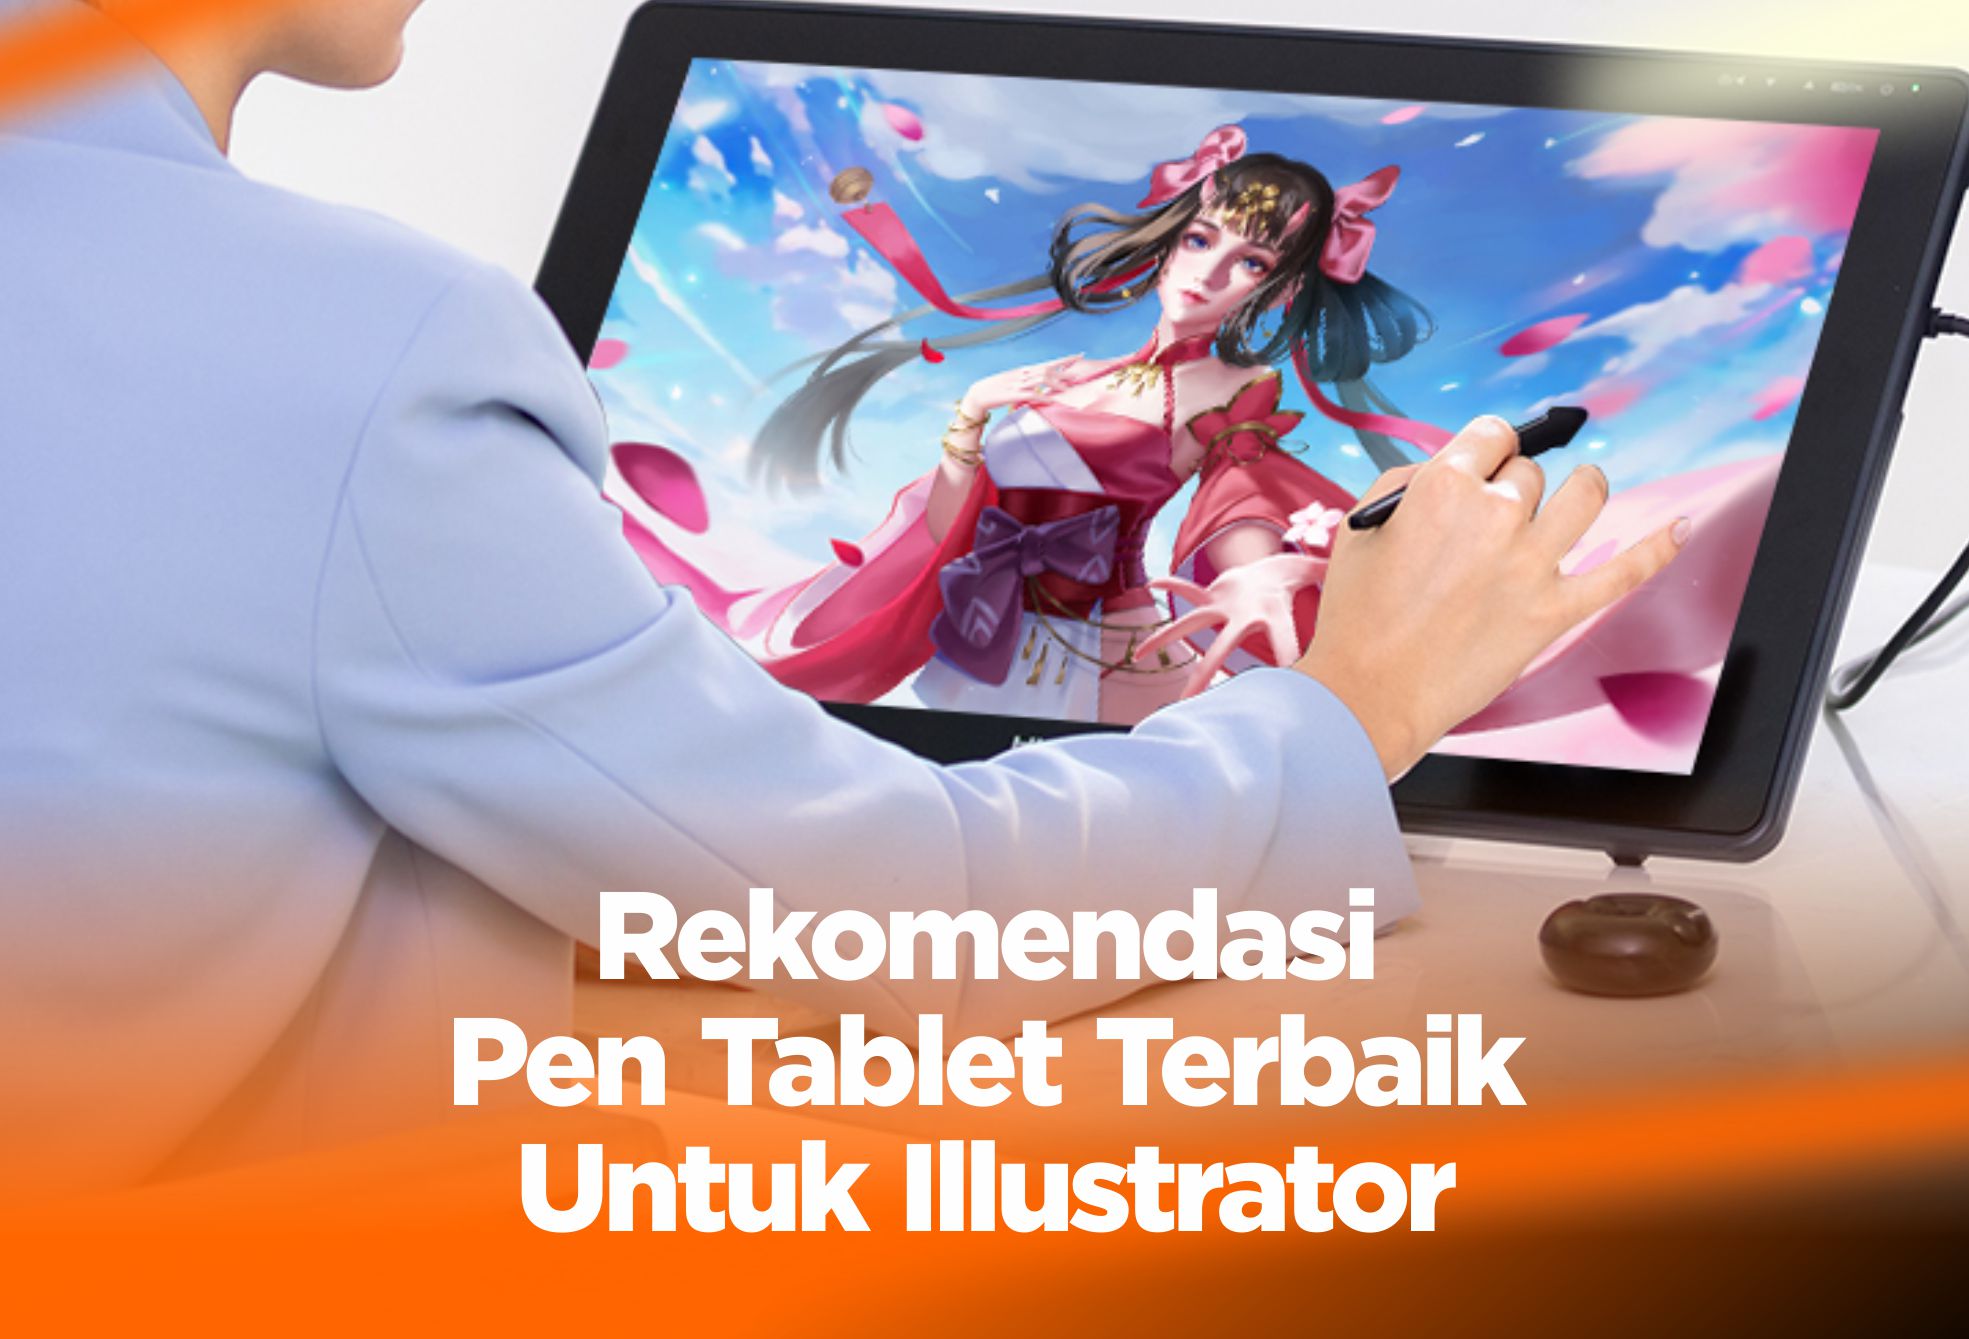 Rekomendasi Pen Tablet Terbaik Untuk Illustrator